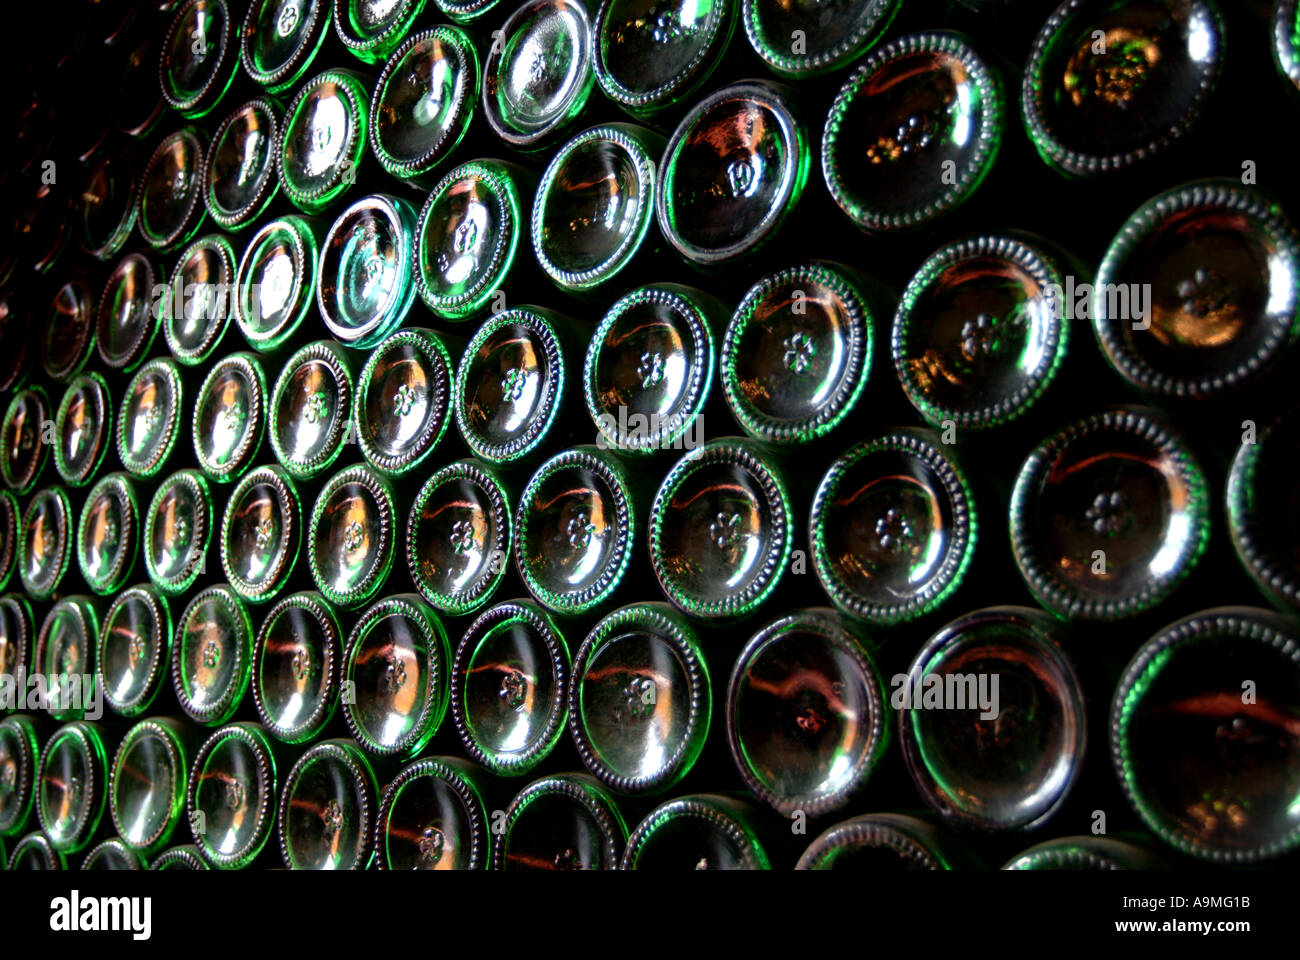 Winery bottle storage Mendoza Argentina Stock Photo